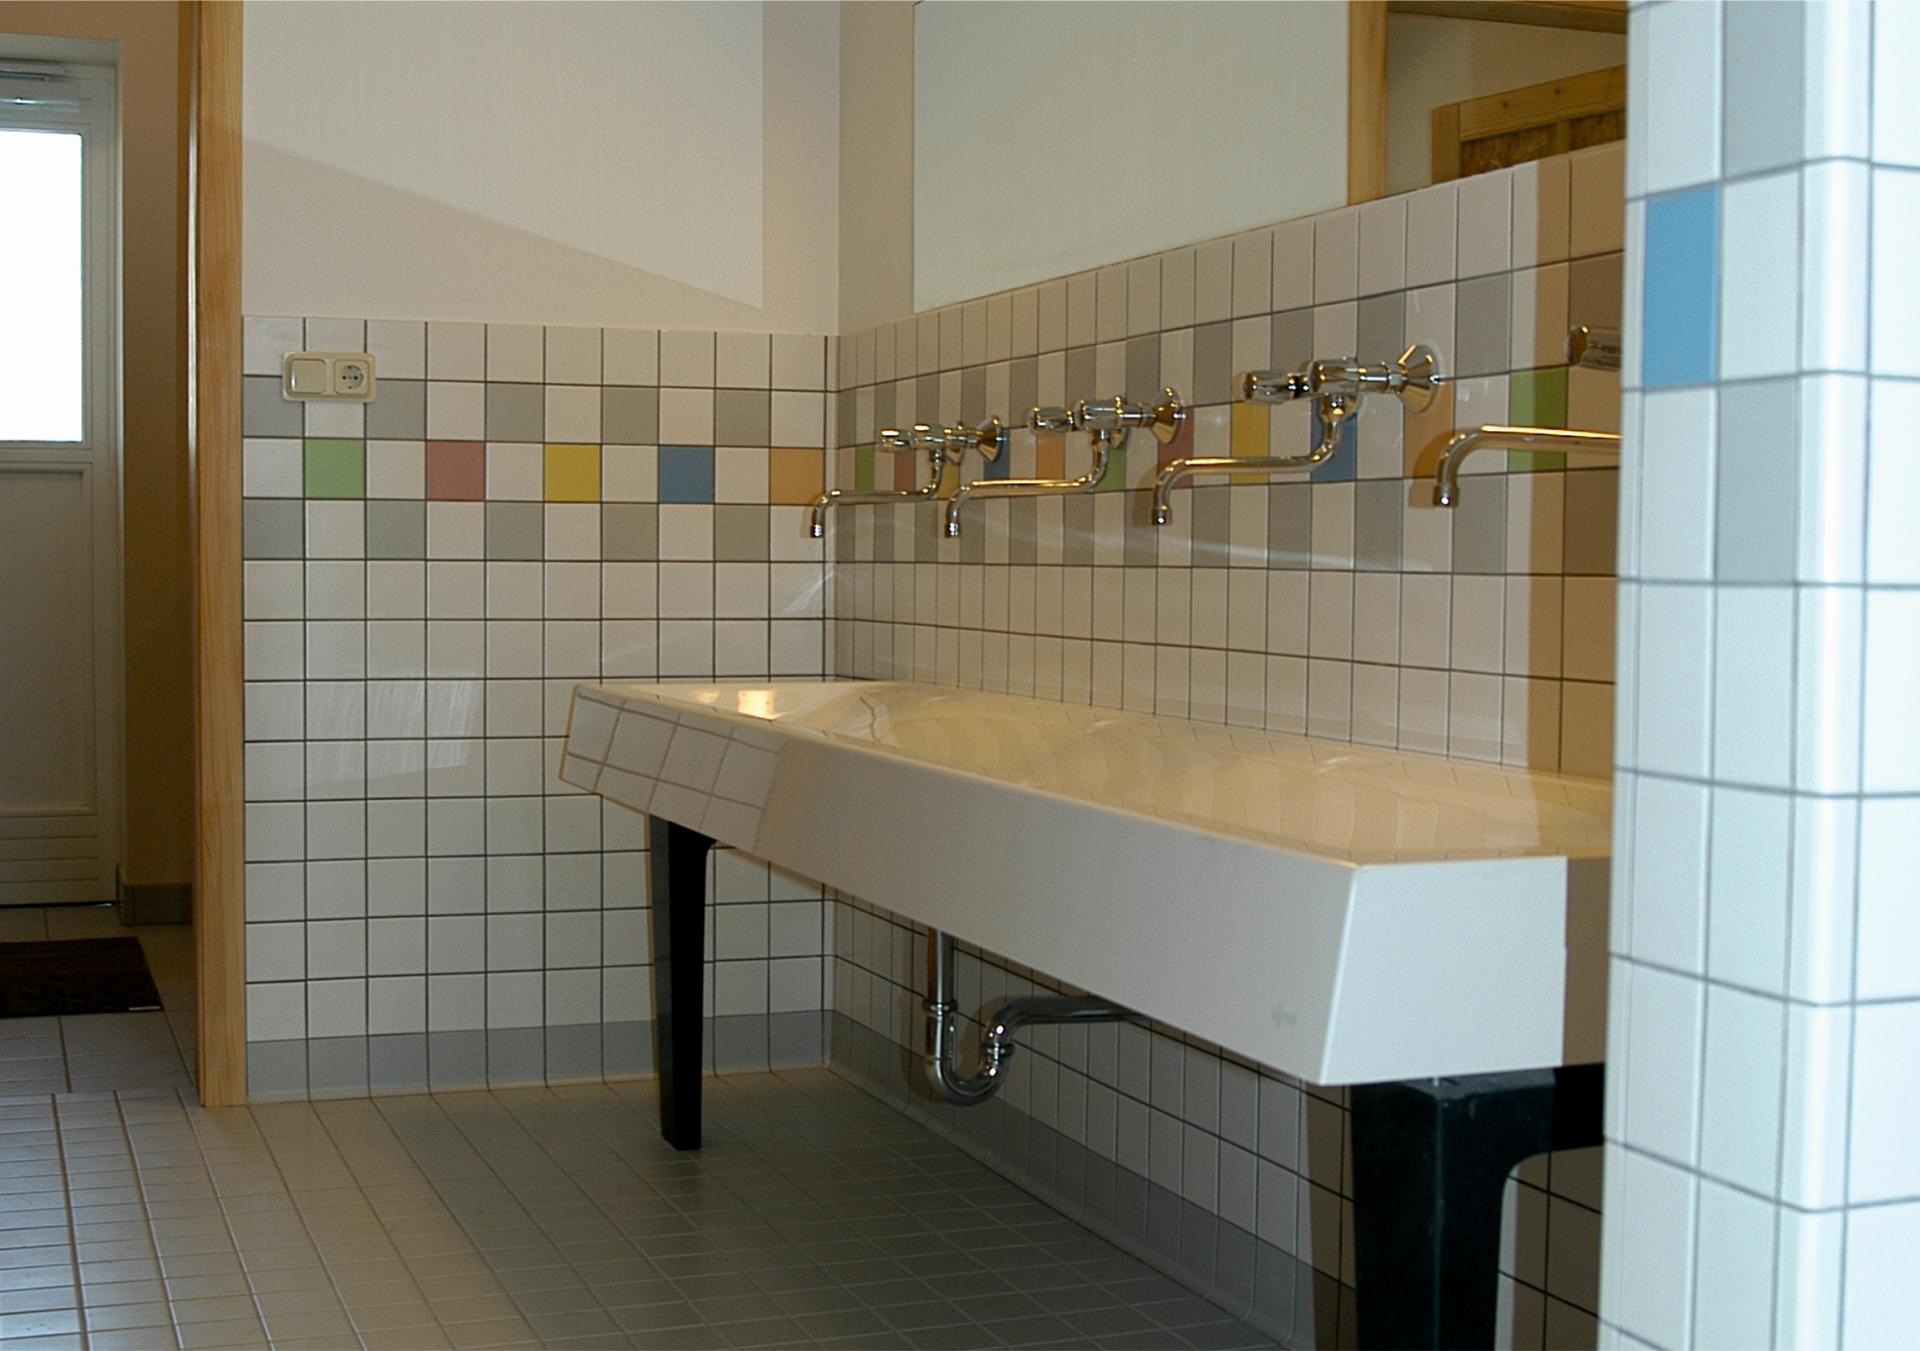 Washroom facilities